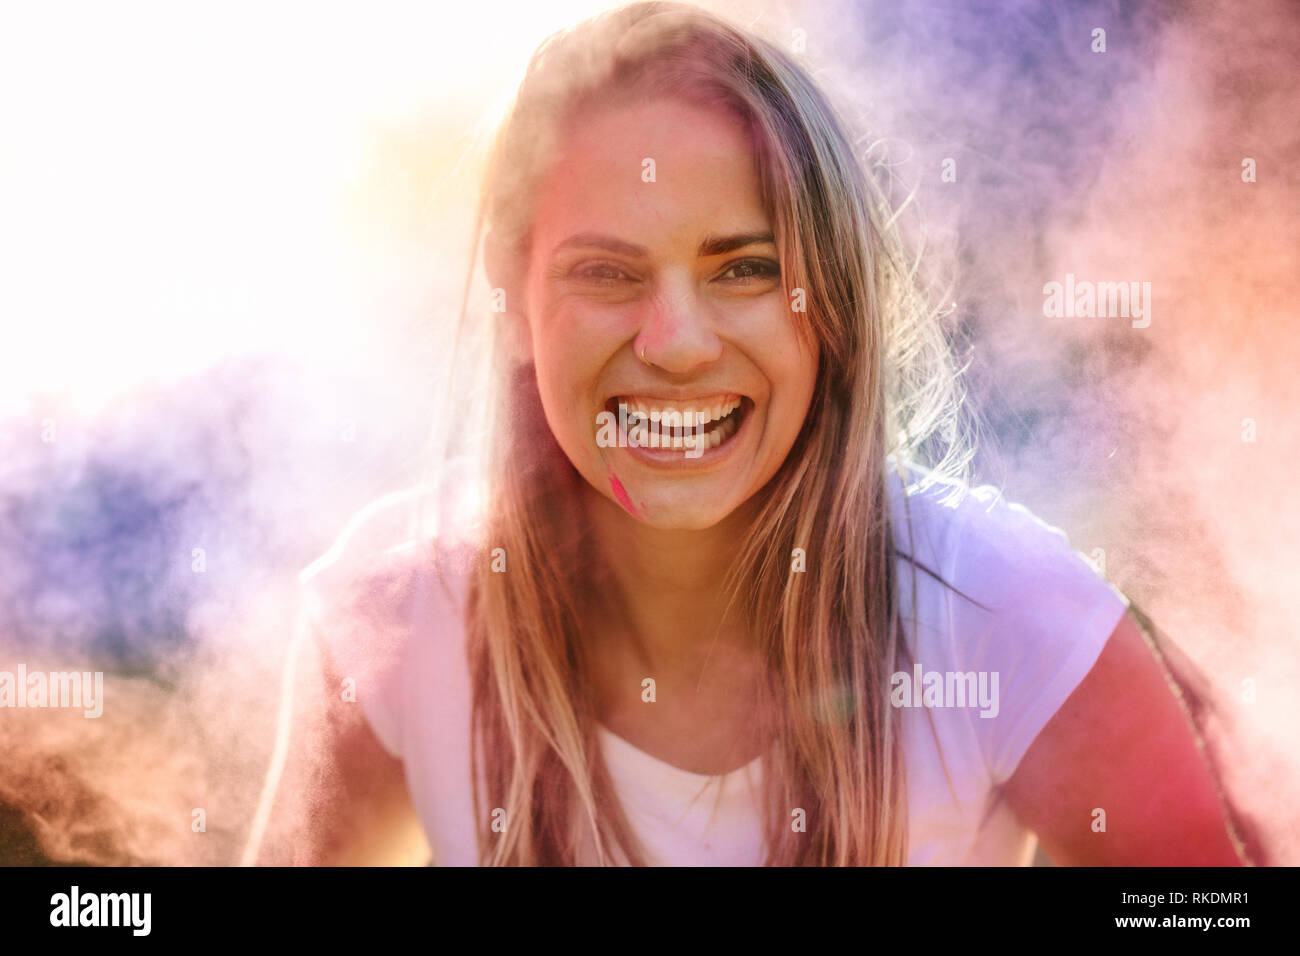 Lächelnde Frau spielen Holi im Freien mit Puder Farben. Frau Spaß holi Spielen mit Farbe Pulver in der Luft im Hintergrund, kann der Verletzte erblinden. Stockfoto